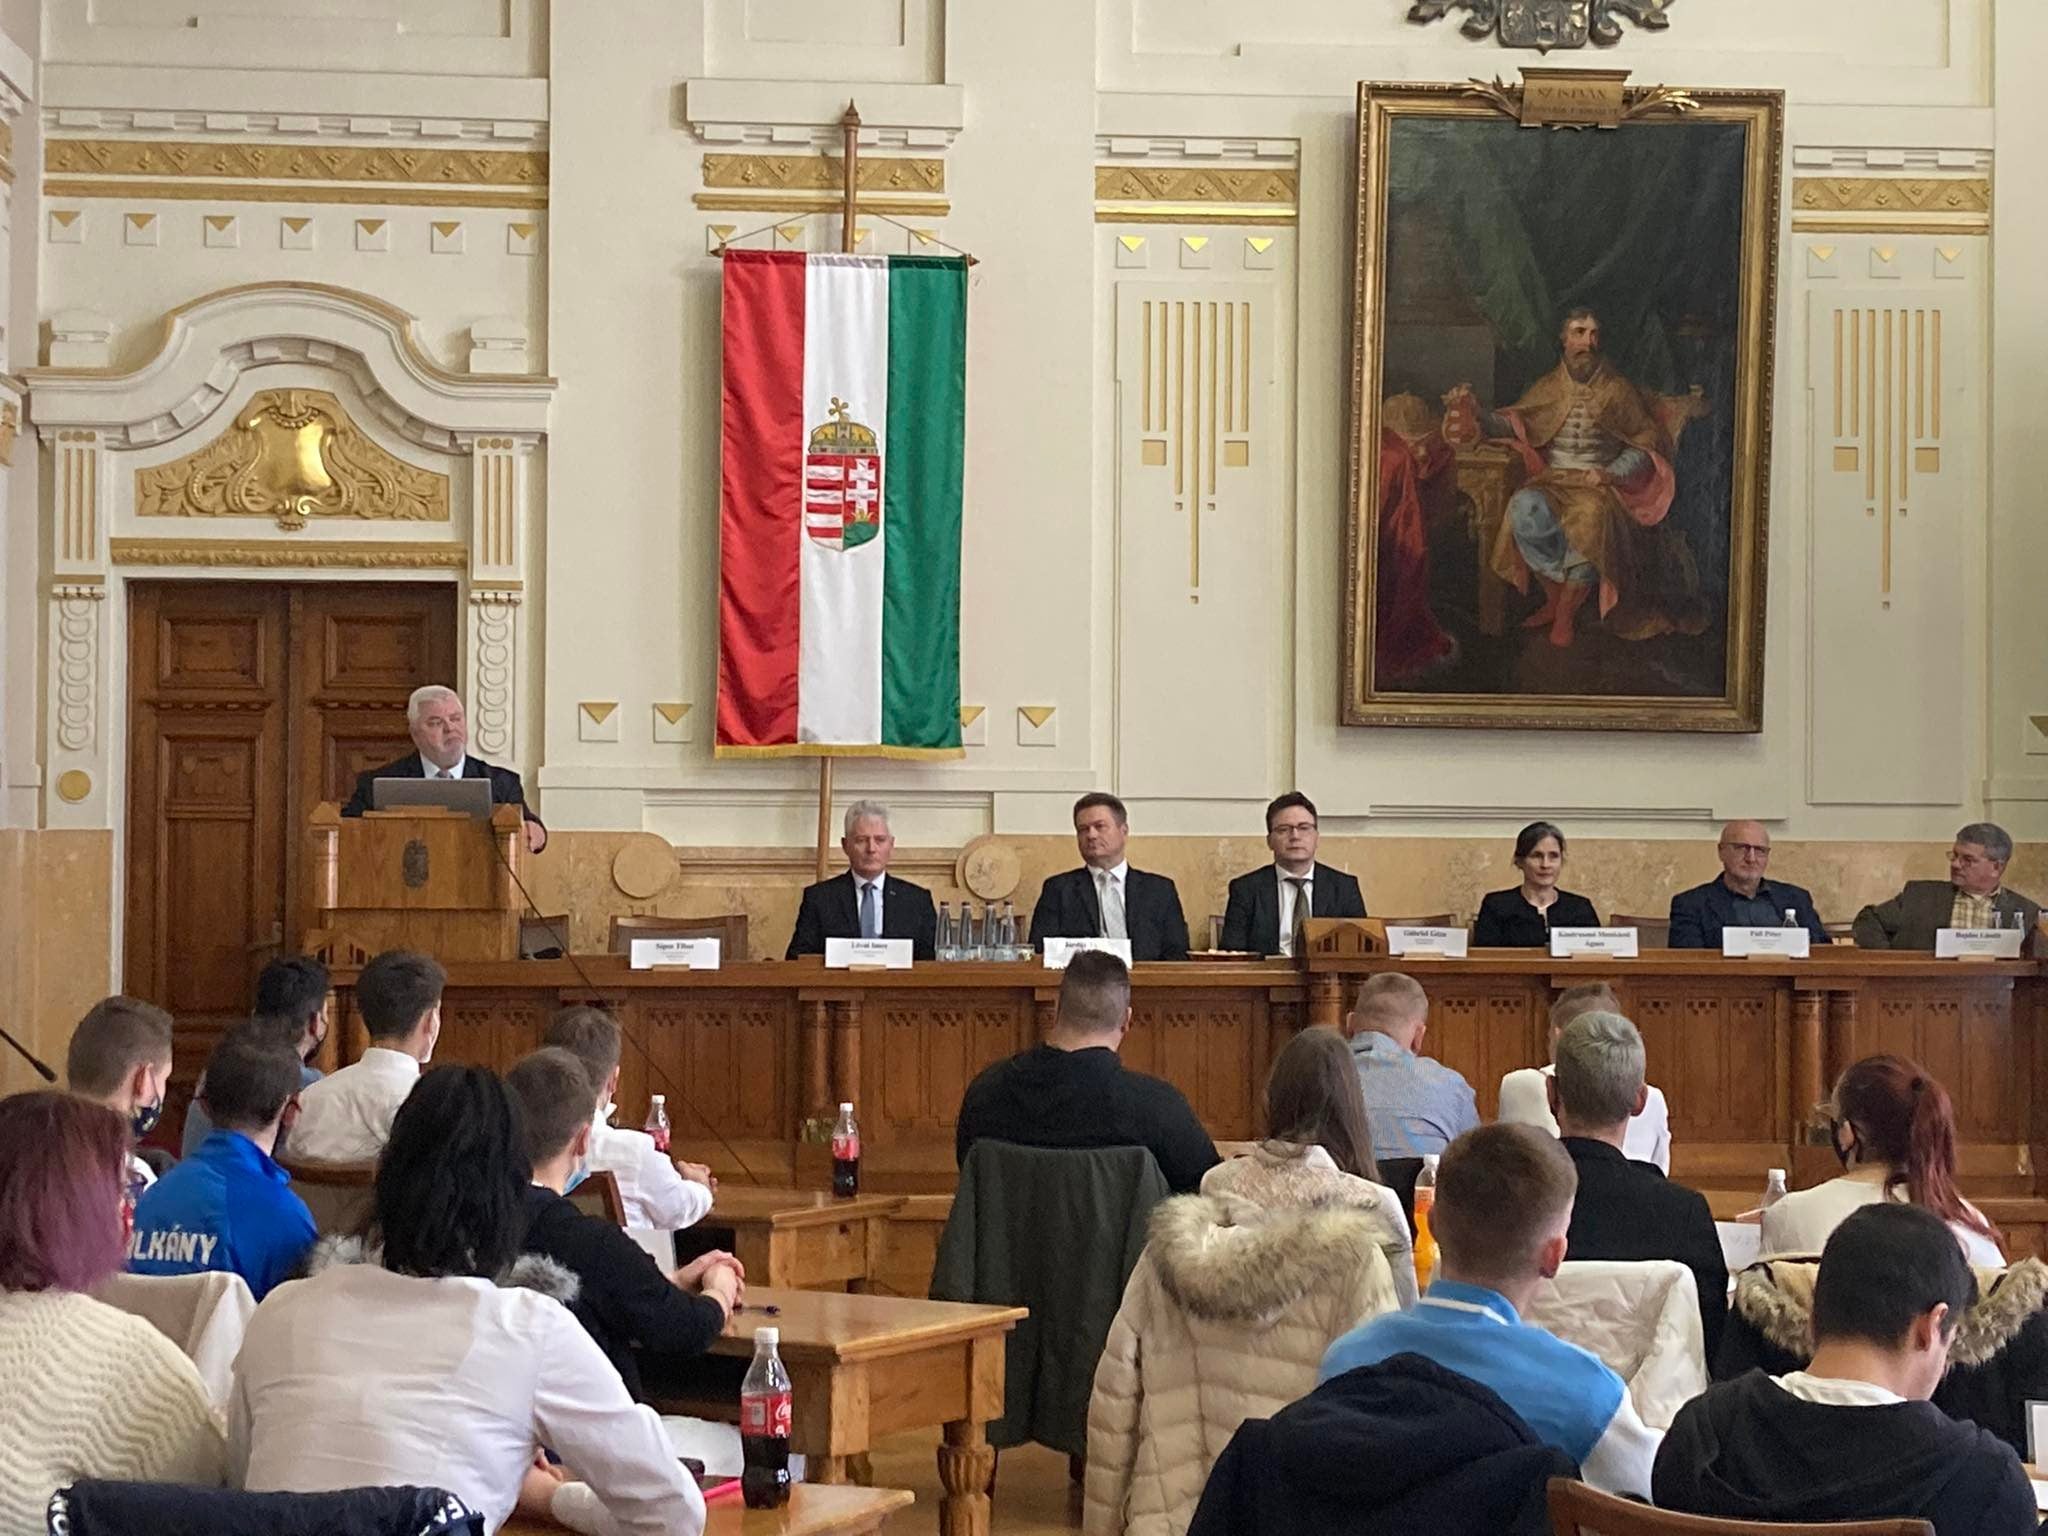 Konferenciaterem, ahol emberek ülnek, és egy hangszóró a pódiumon. egy nagy portré mellett magyar zászló lóg, a résztvevők pedig egy hivatalos rendezvényen jelennek meg.